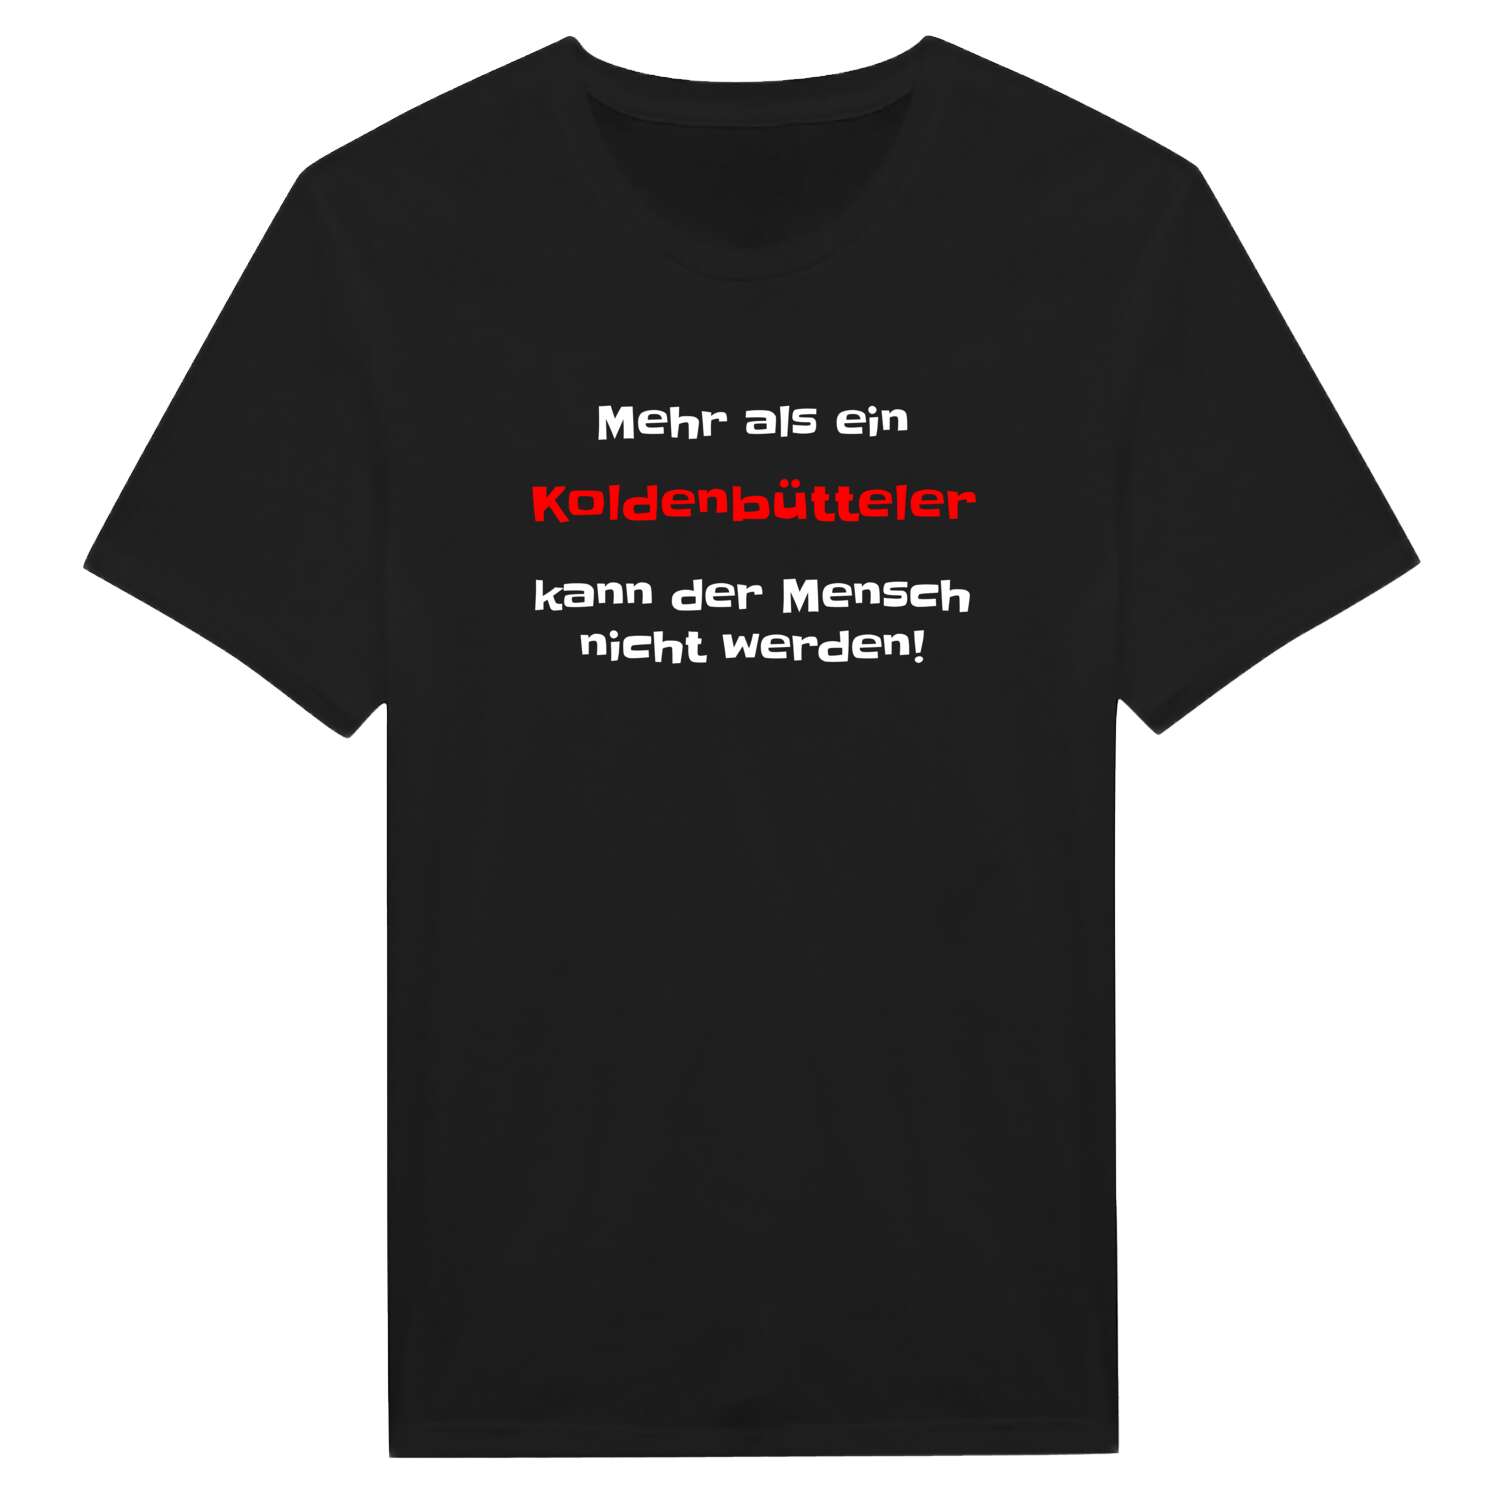 Koldenbüttel T-Shirt »Mehr als ein«